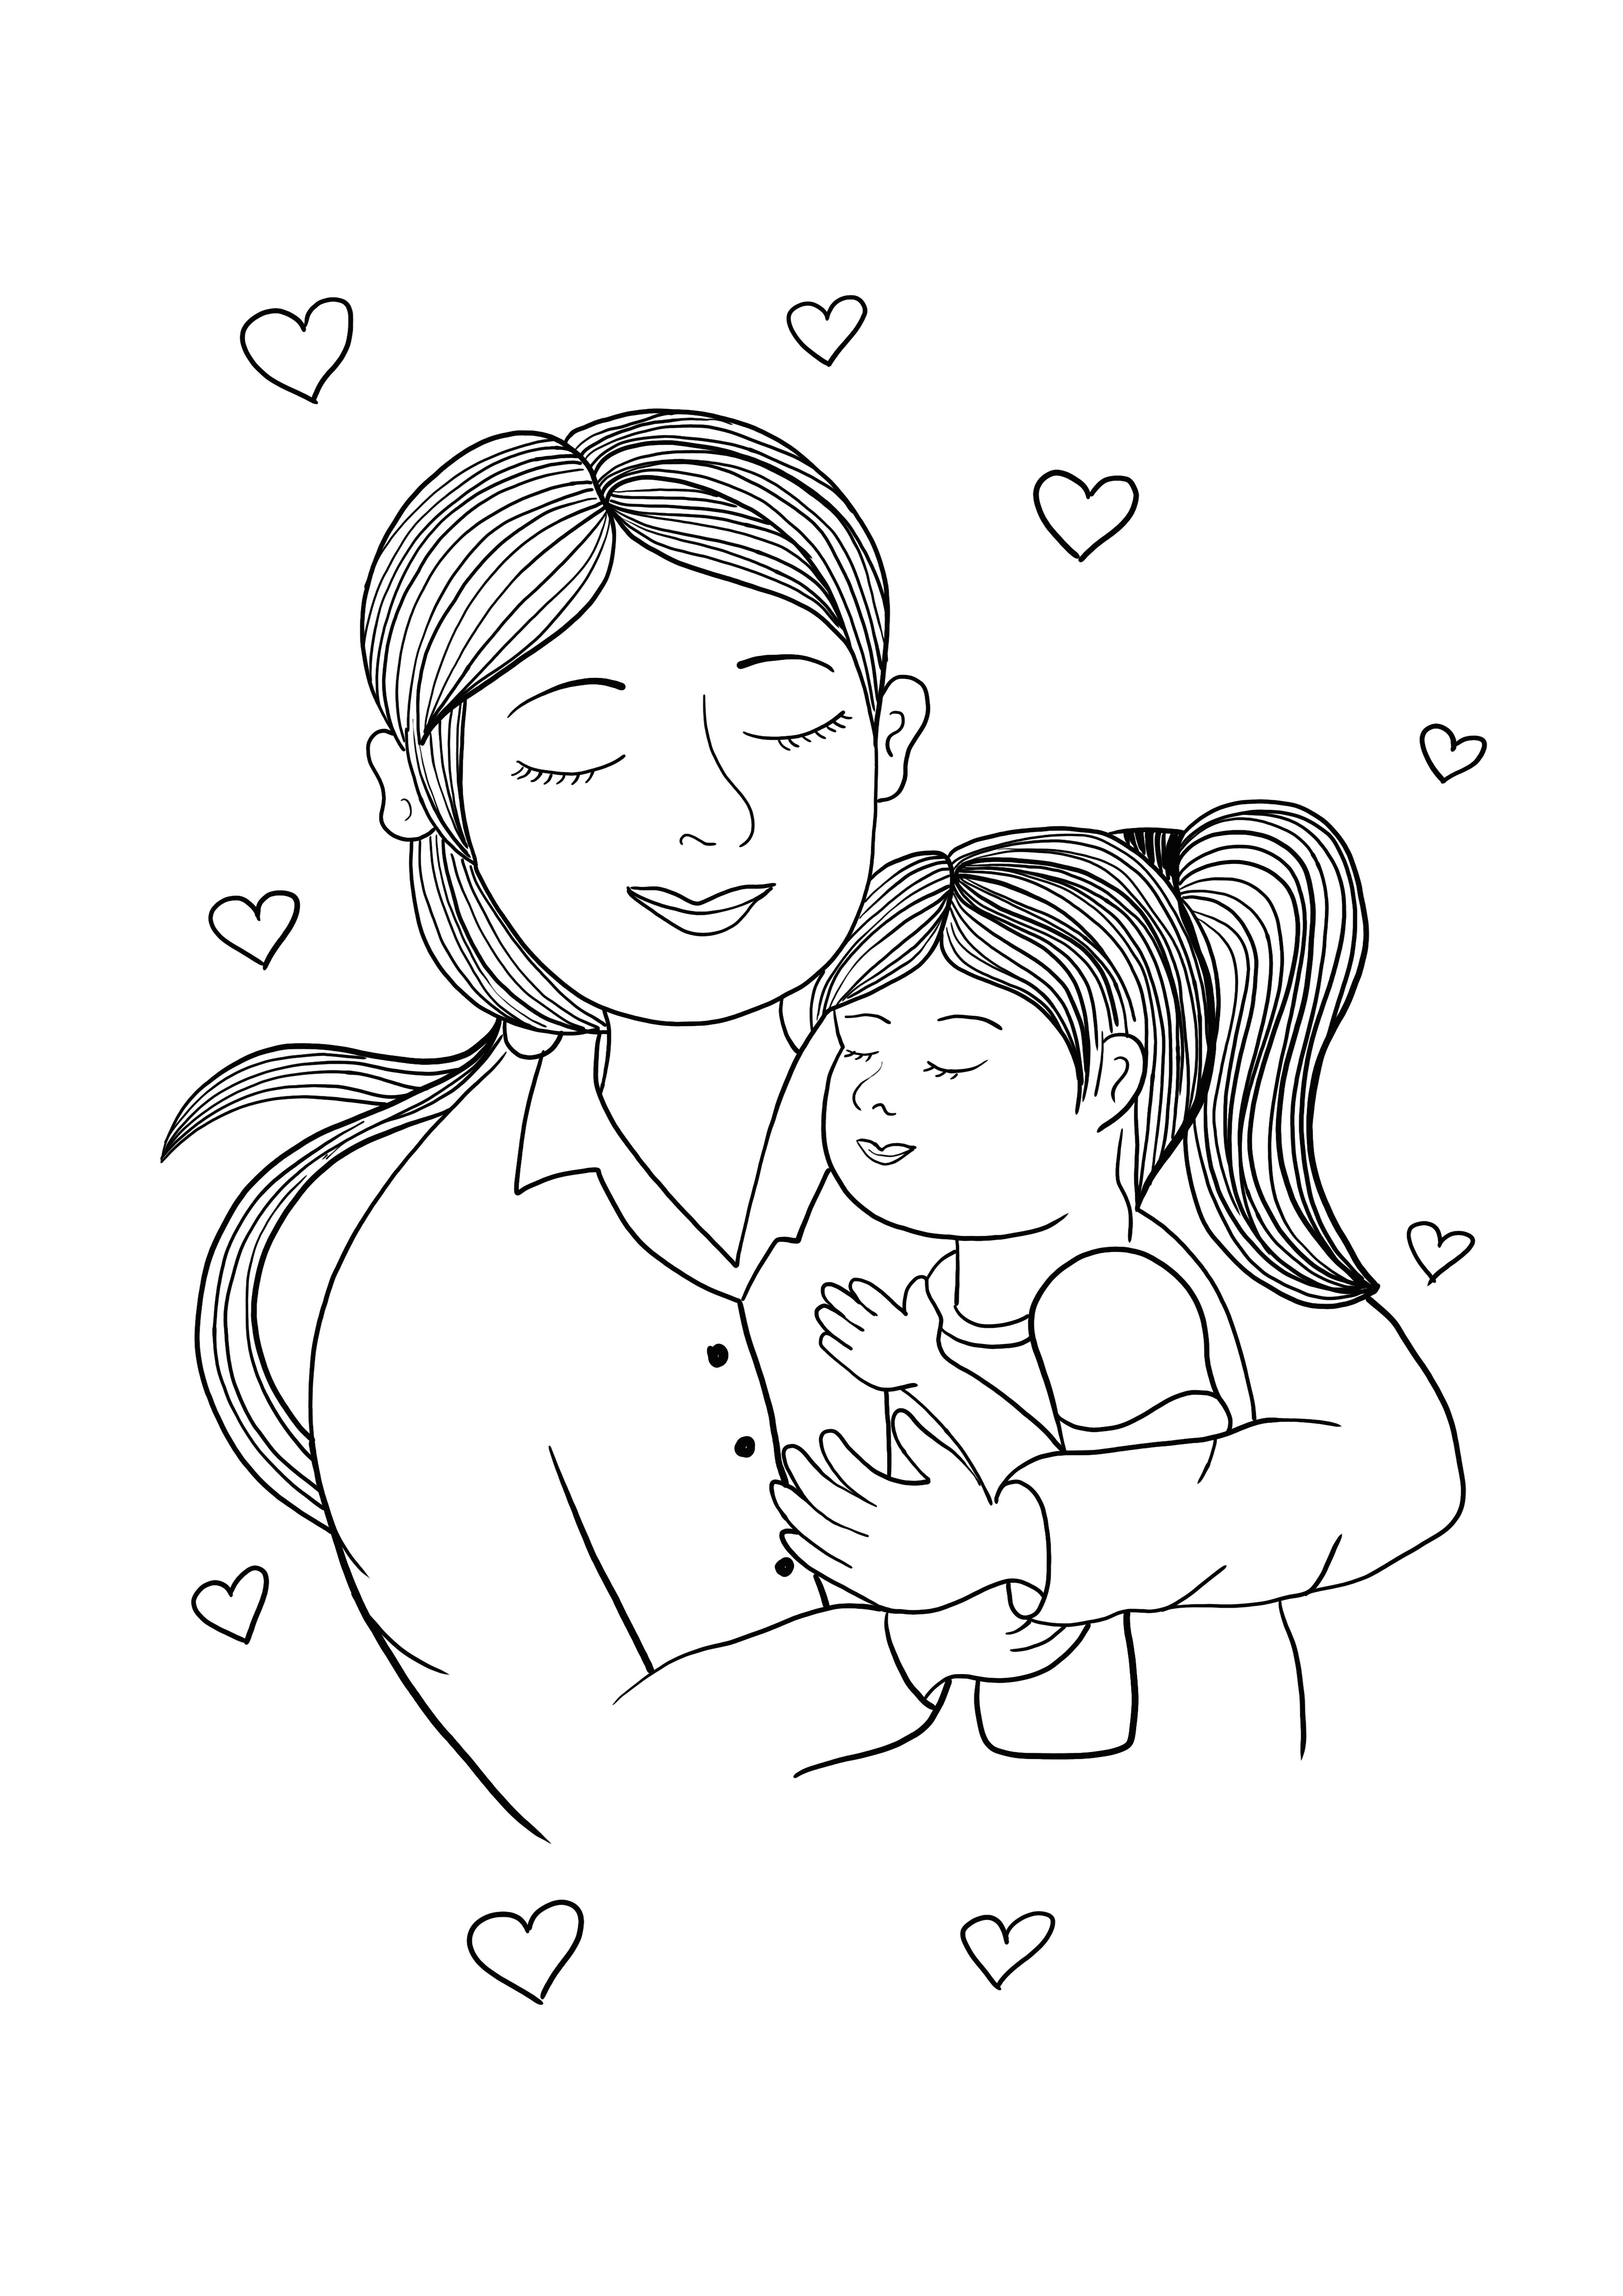 anne ve kızı ücretsiz yazdırılabilir resim